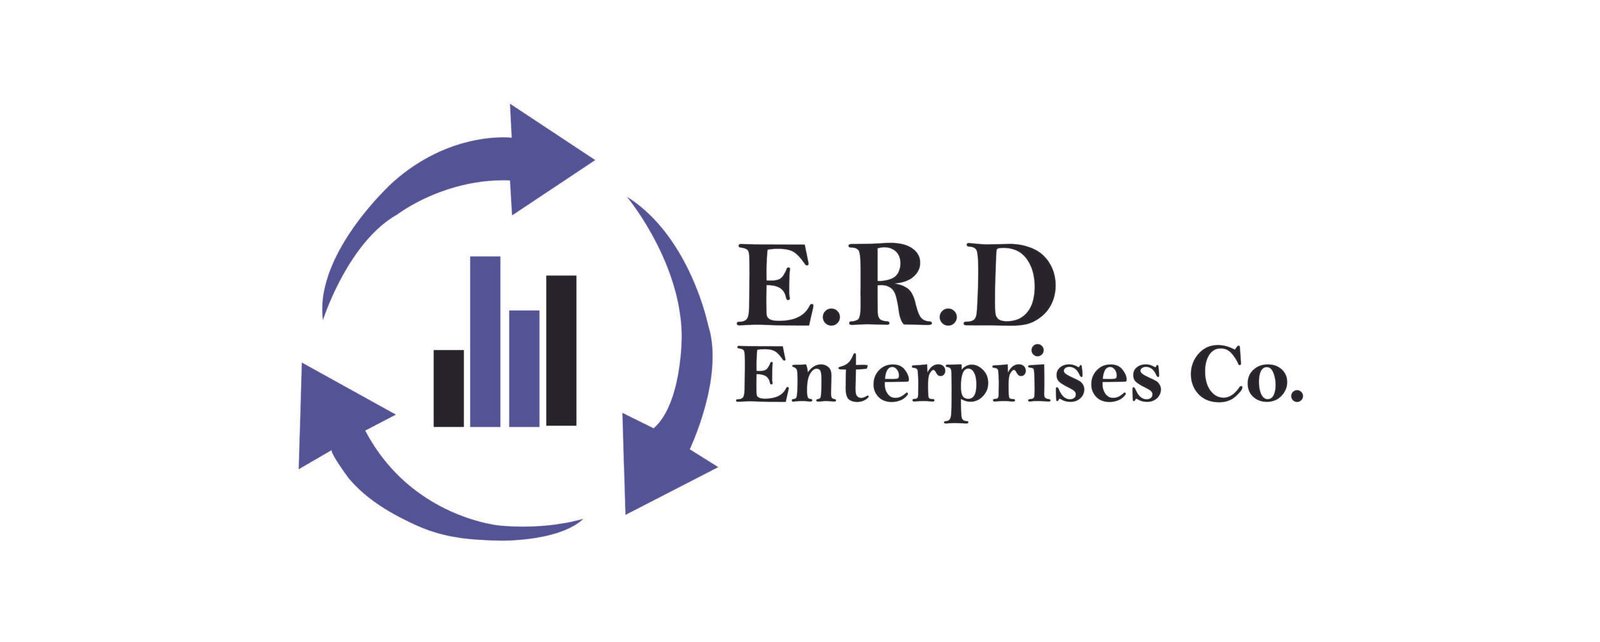 ERD Financial - ERD Recovery | LinkedIn